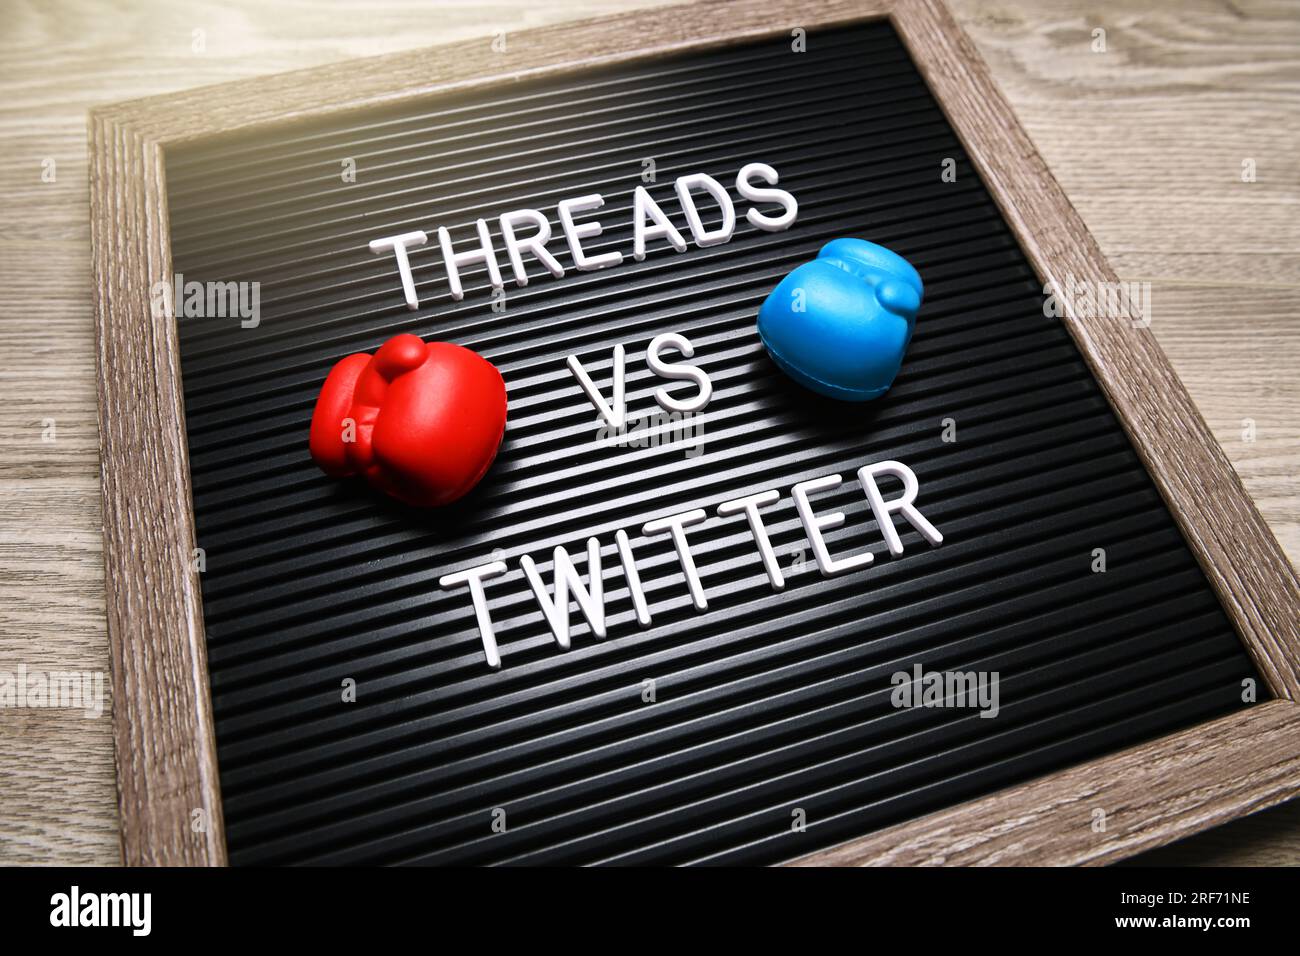 FOTOMONTAGE, Auf einer Tafel mit Boxhandschuhen steht threads vs Twitter, neuer Kurznachrichtendienst thread Twitter Konkurrenz machen Foto Stock